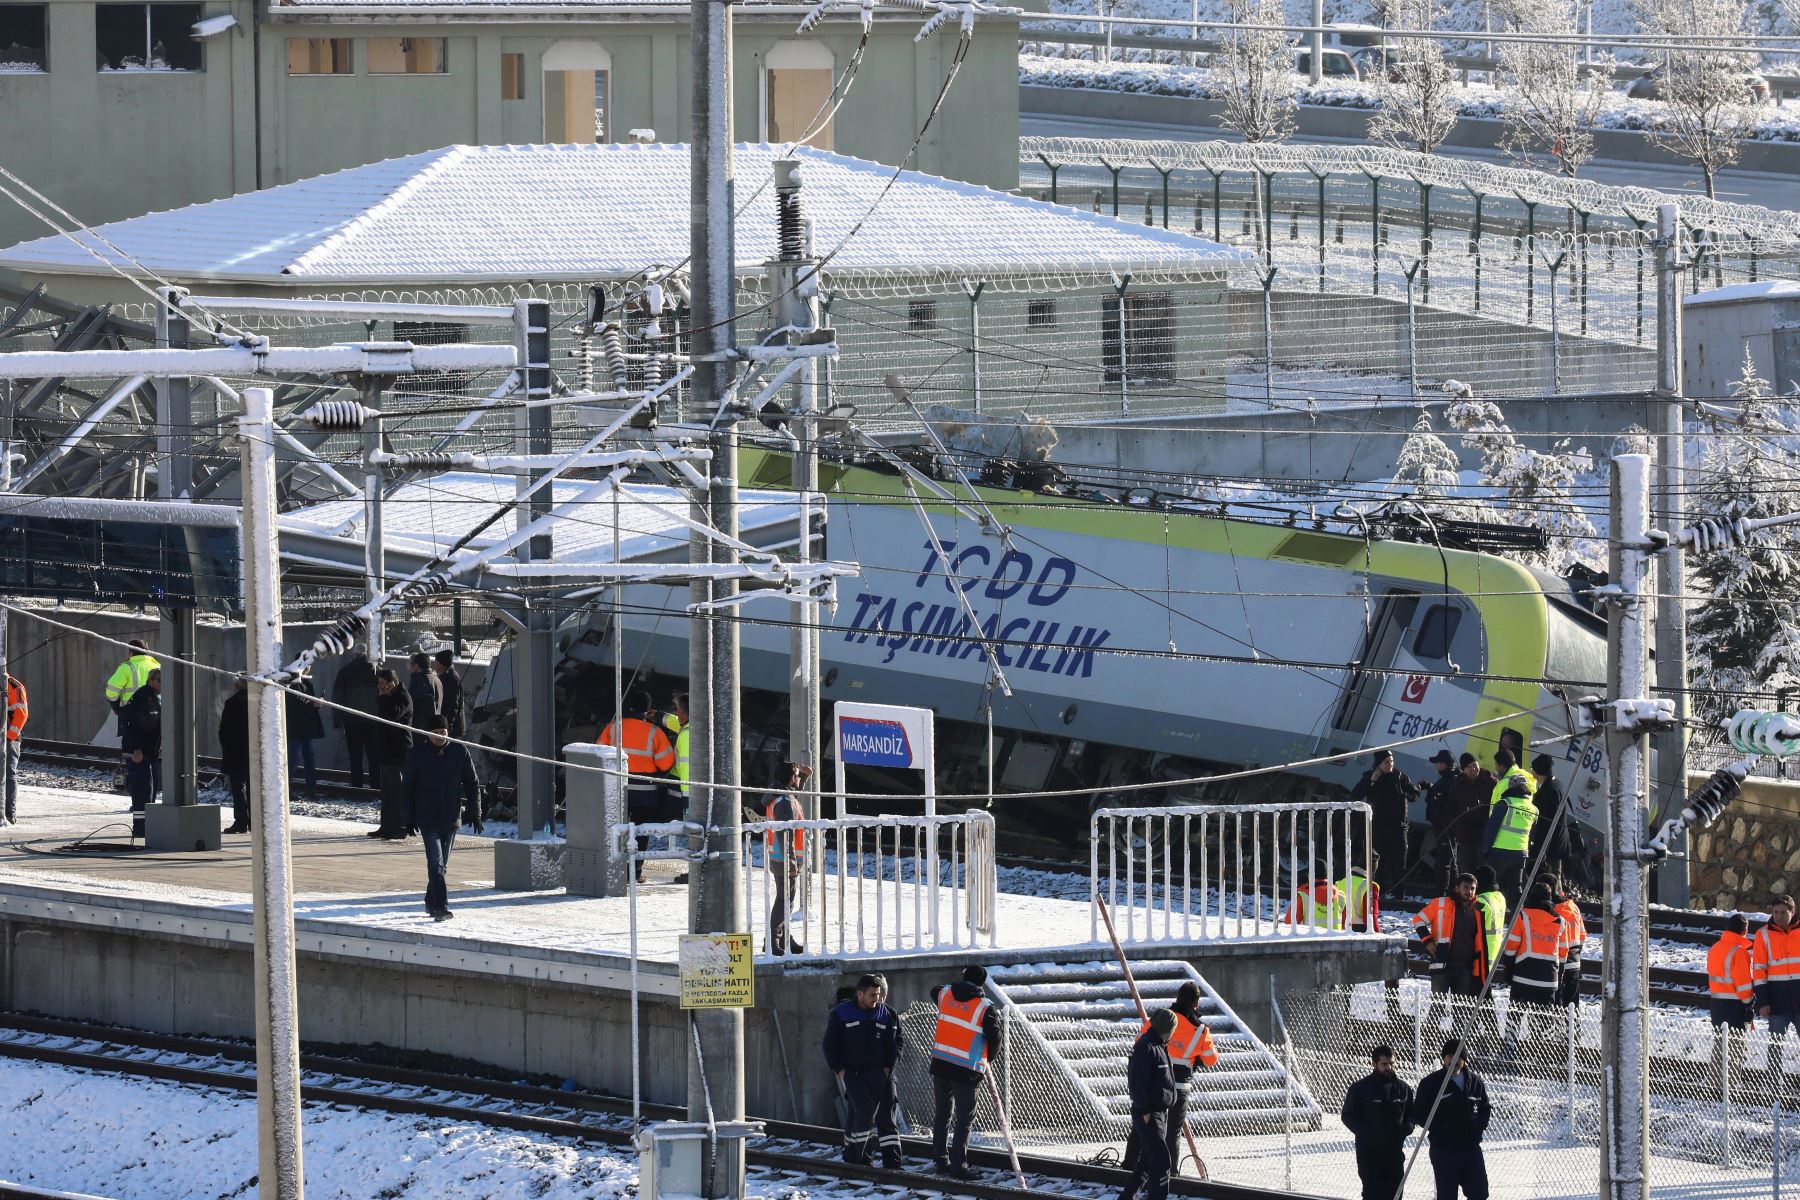 Bomberos y médicos intentan rescatar a las víctimas después de que un tren de alta velocidad se estrellara contra una locomotora en Ankara, el 13 de diciembre de 2018. - Nueve personas murieron y casi 50 resultaron heridas en este accidente ferroviario. AFP